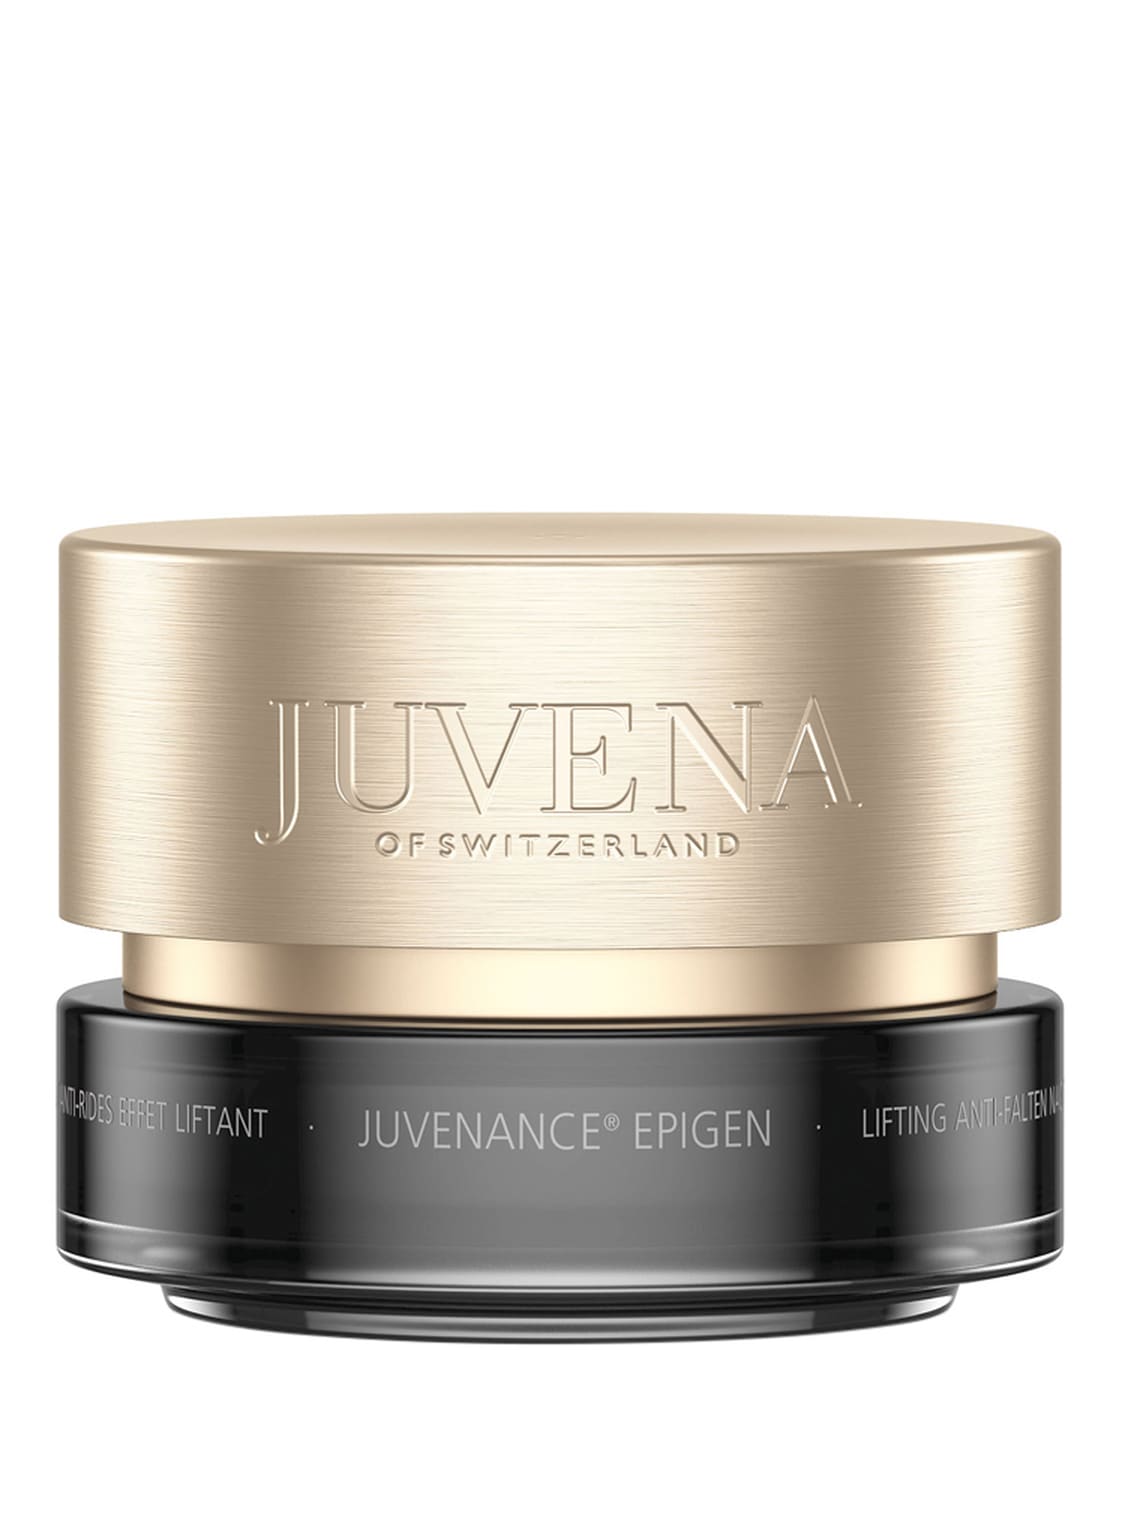 Juvena Juvenance Epigen Night Cream 50 ml von Juvena